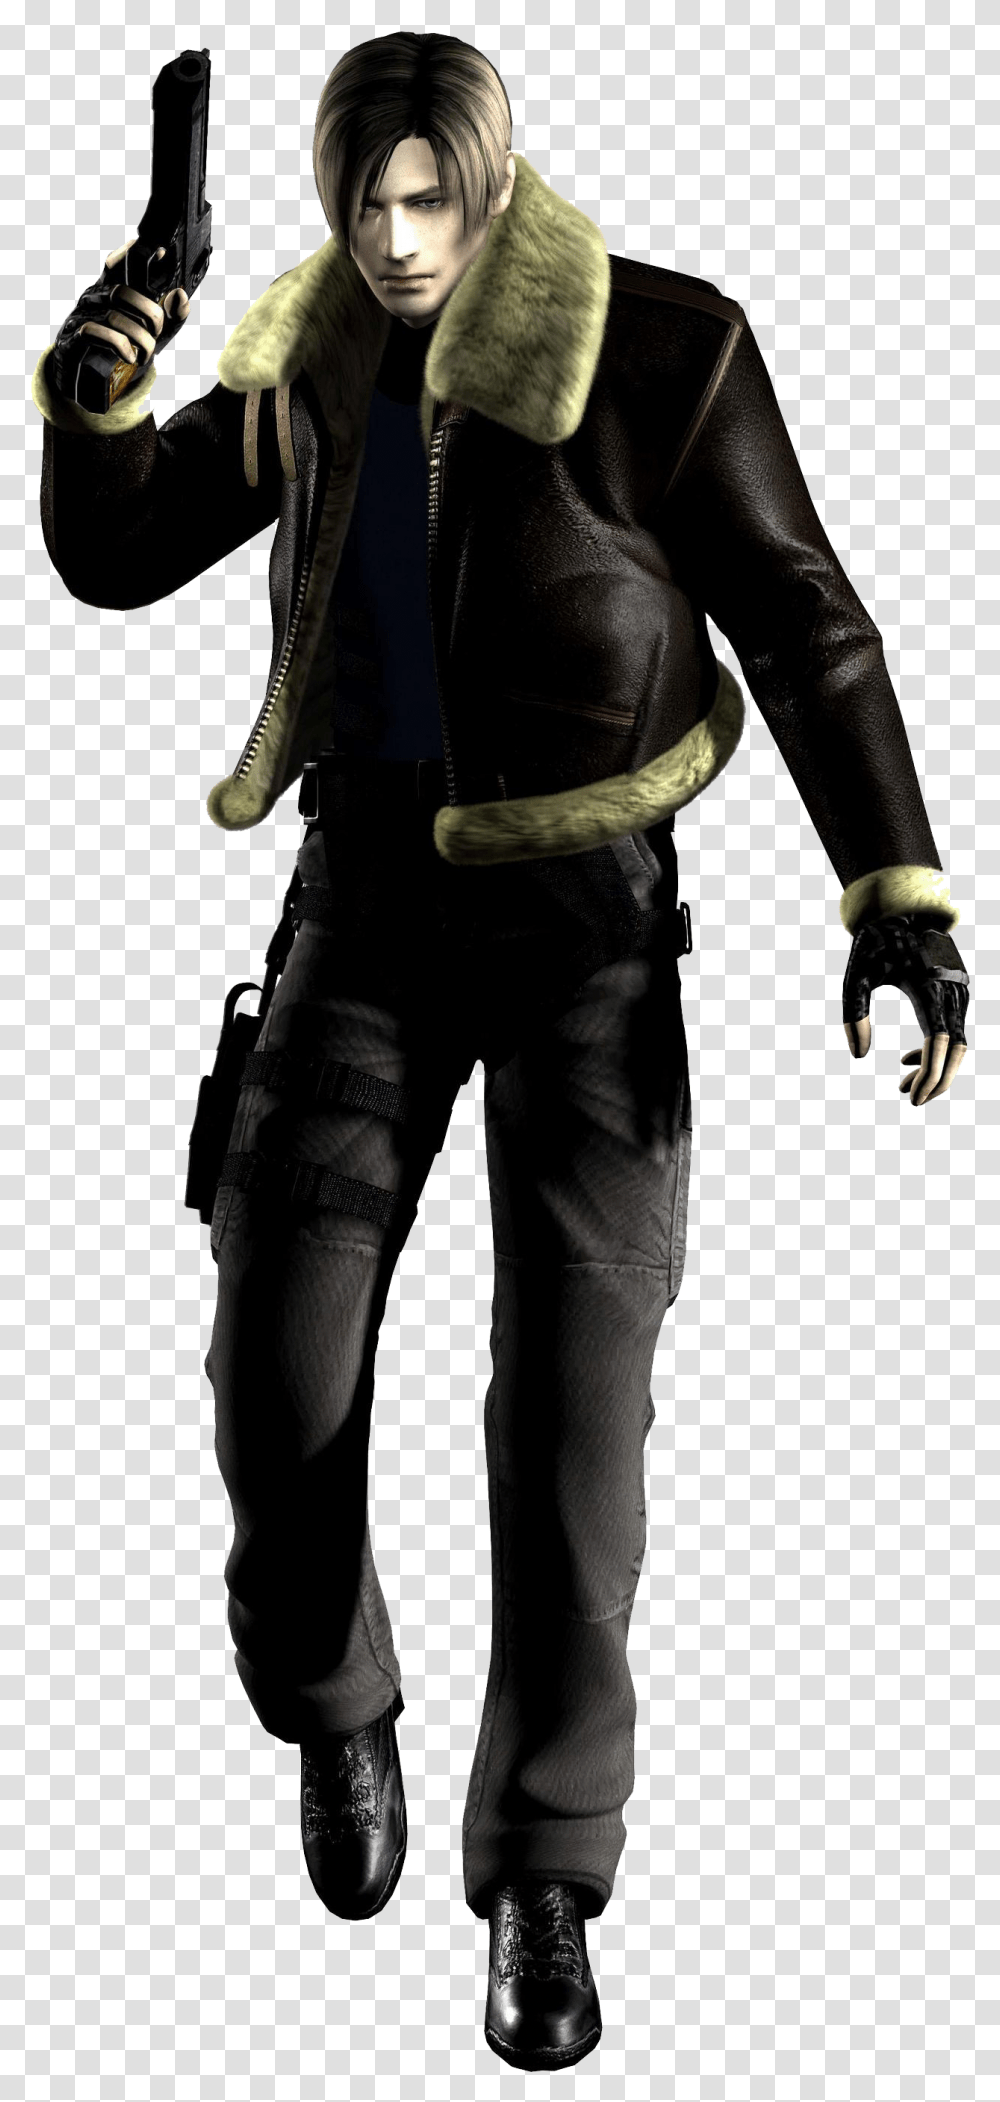 Resident Evil 4 Beta Leon Resident Evil 4 Beta Leon, Person, Coat, Weapon Transparent Png